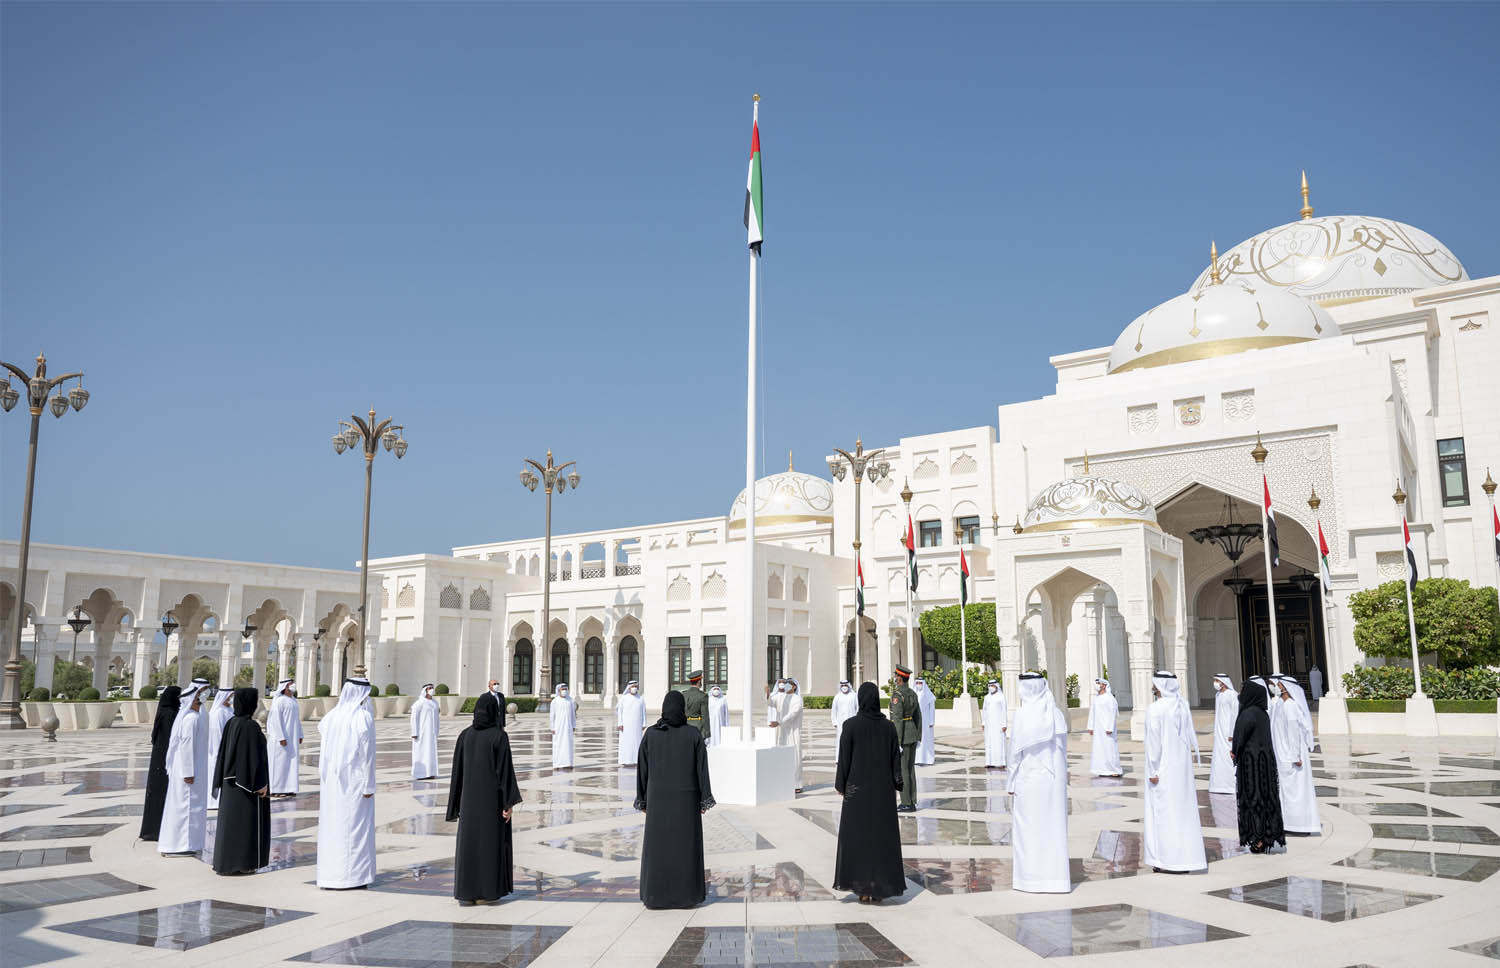 الشيخ منصور بن زايد يرفع علم الامارات في باحة القصر الرئاسي في أبوظبي